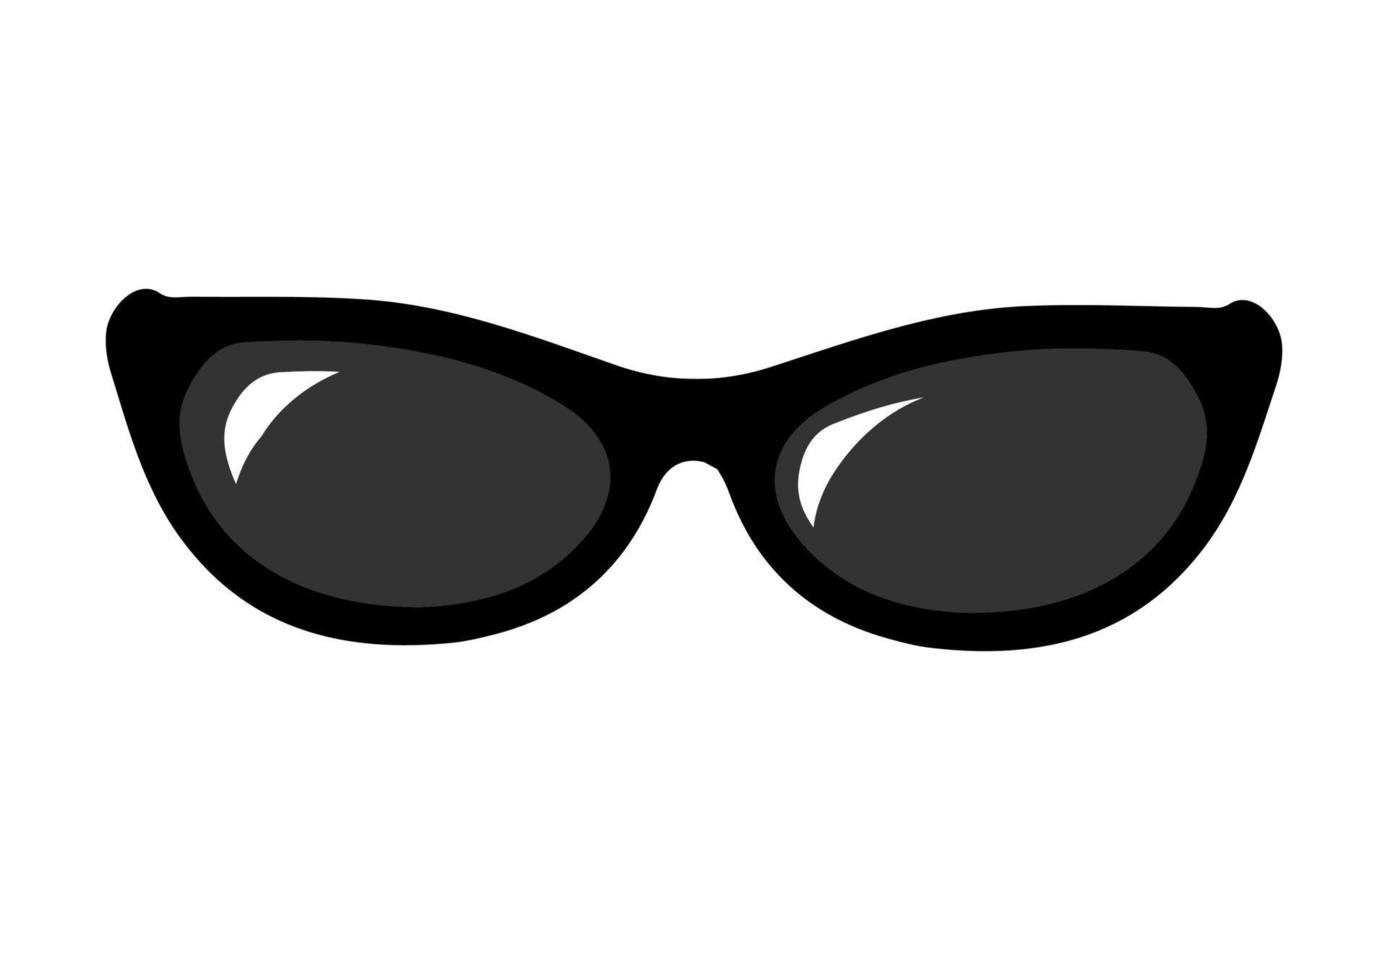 Sunglasses, accessories vector element. Glasses Icon for Graphic Design ...